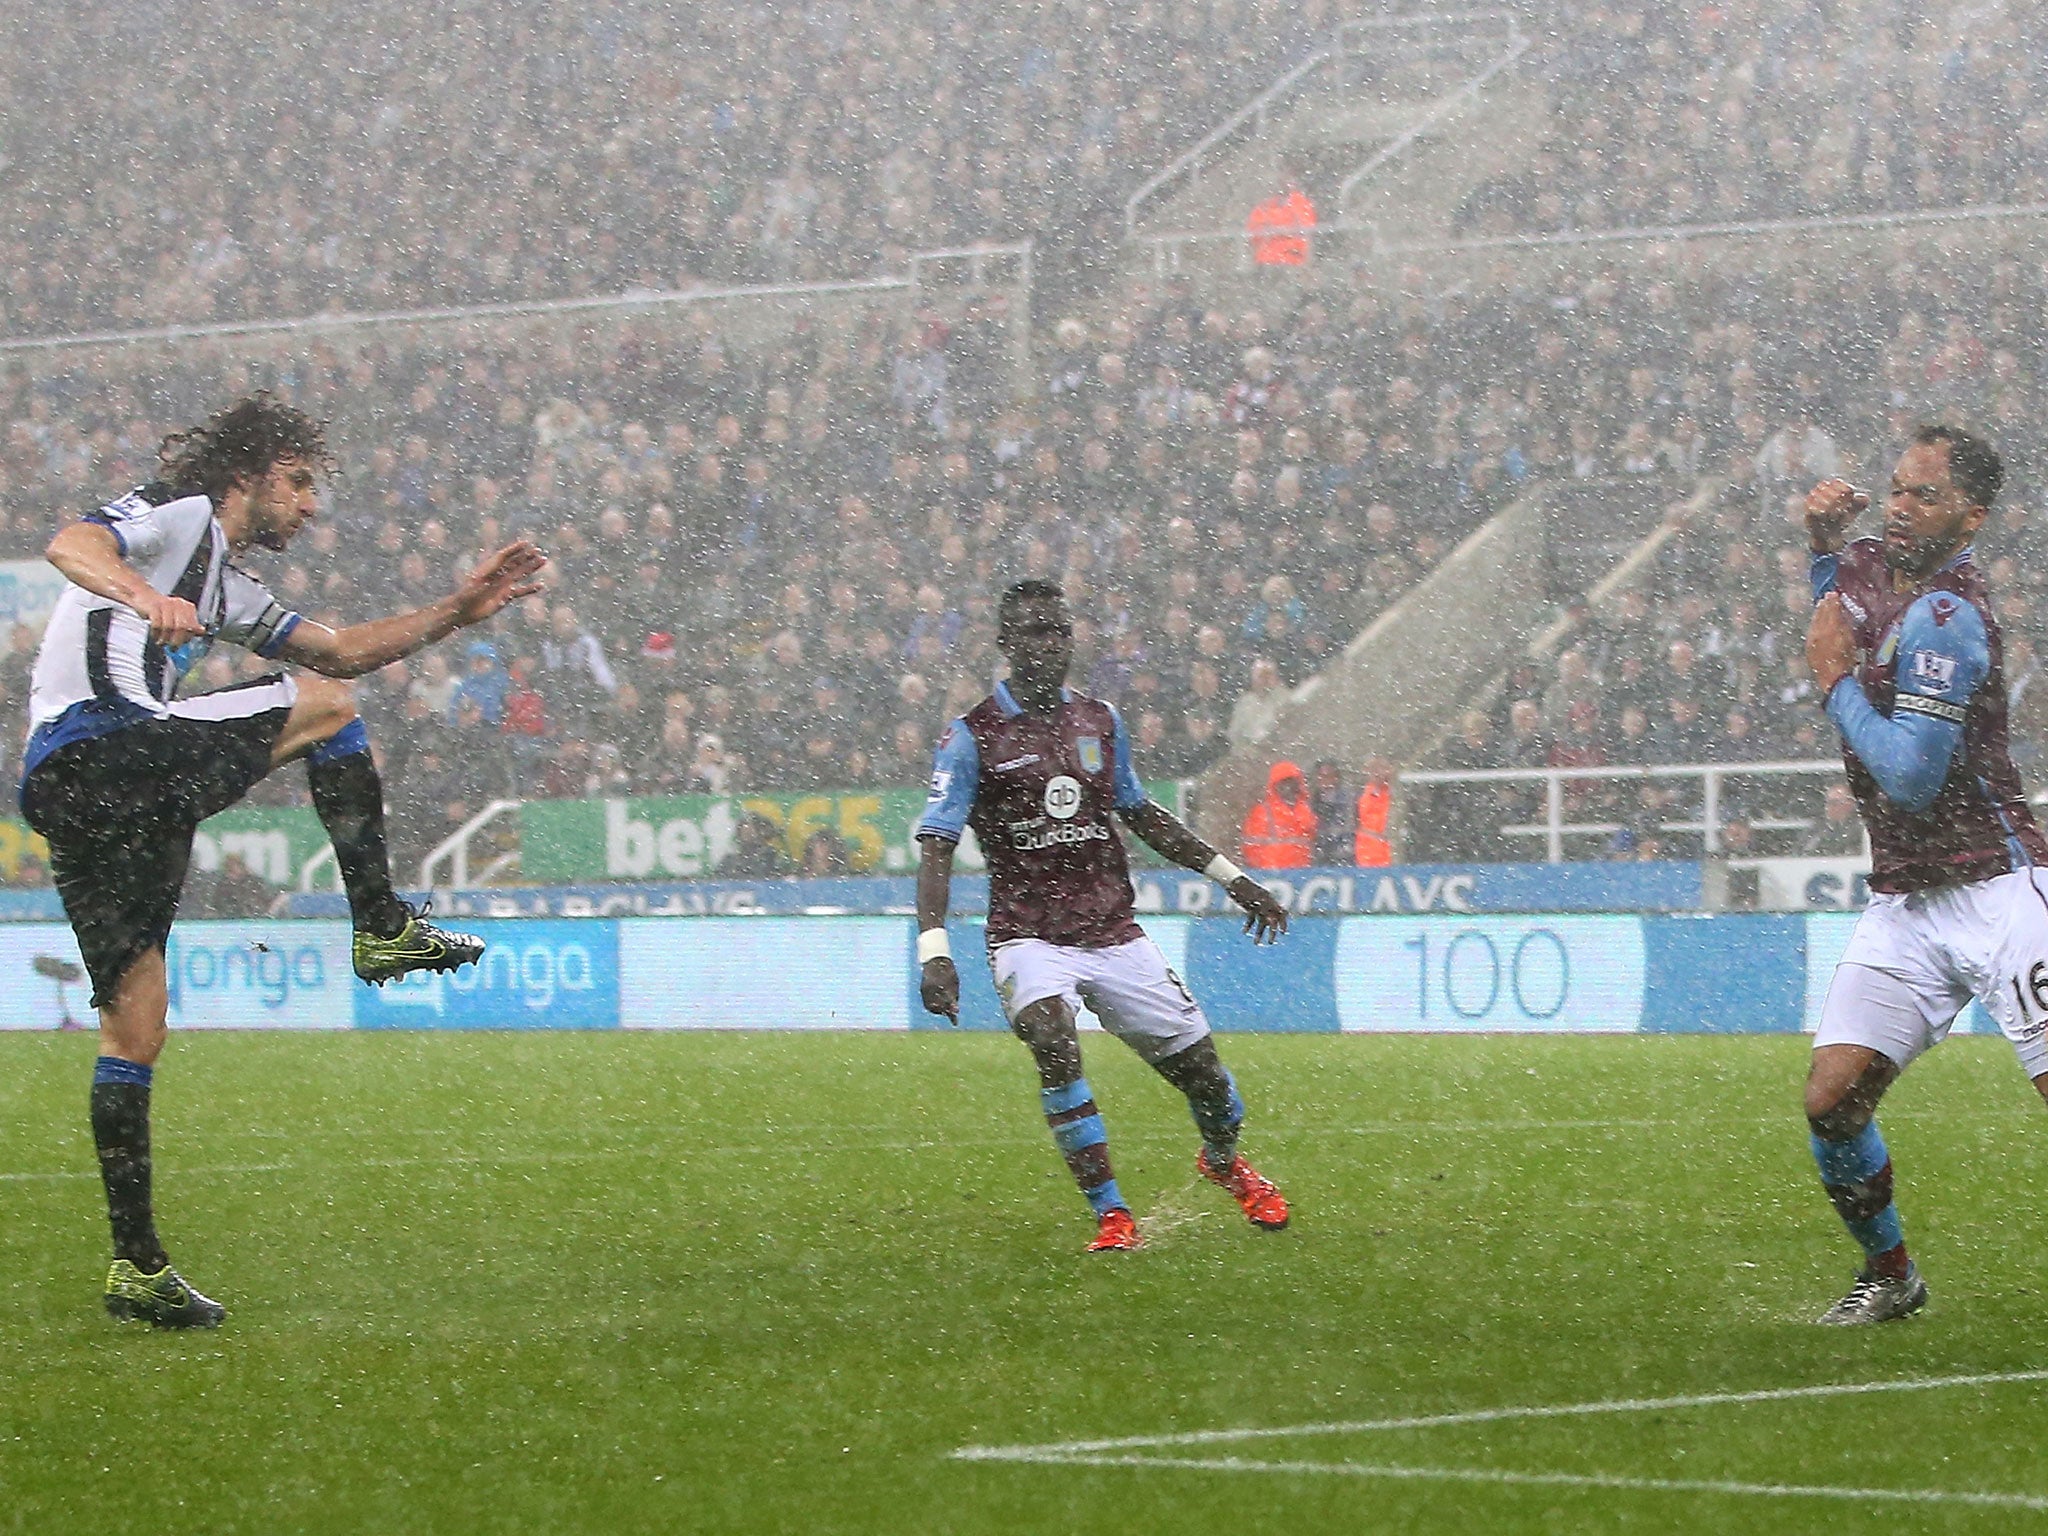 Fabricio Coloccini scores the opening goal for Newcastle against Aston Villa